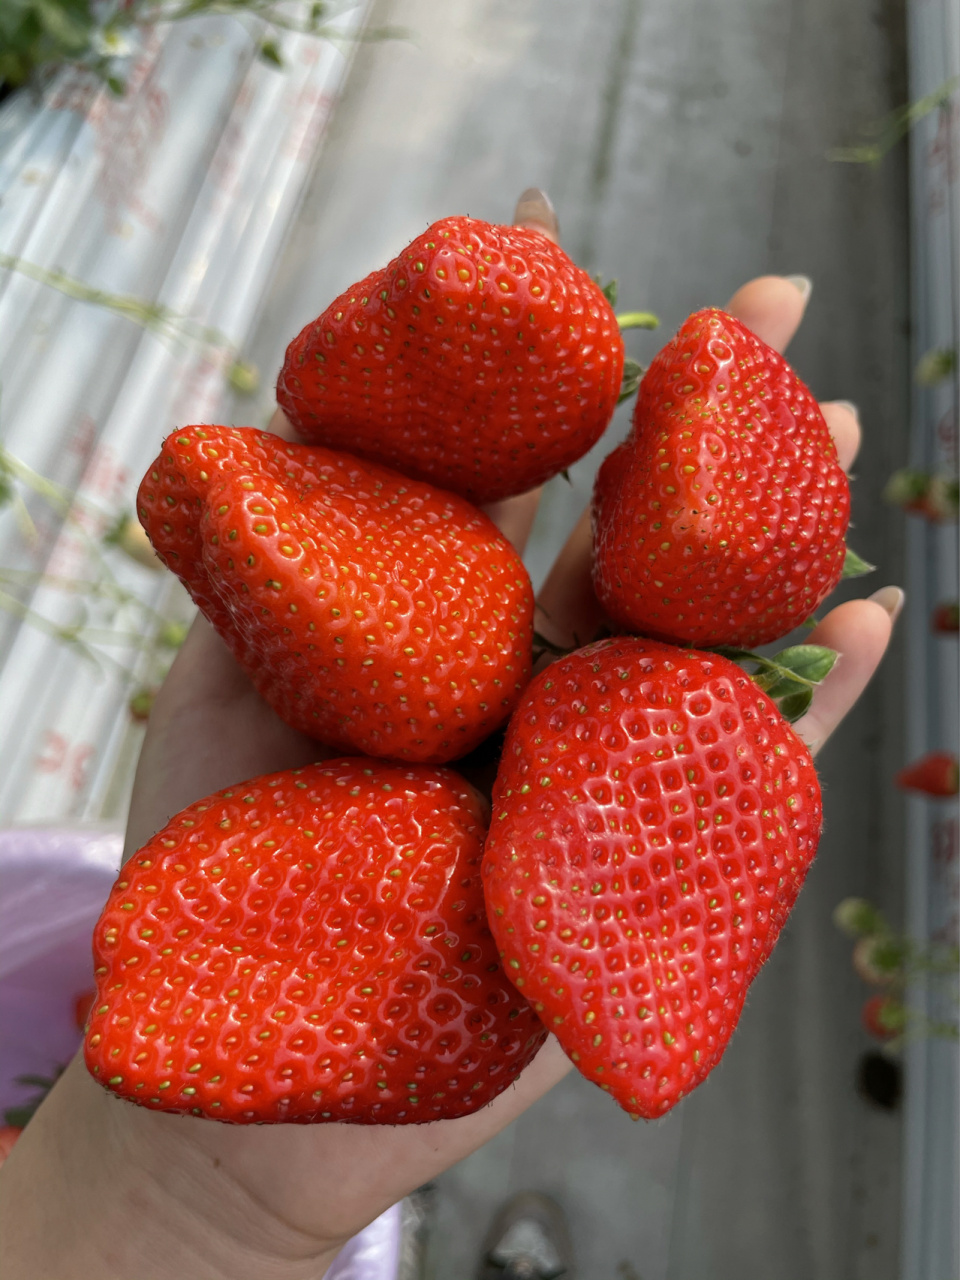 潍坊日本高架草莓采摘91网红地打卡 营业时间:周五周六周日7215